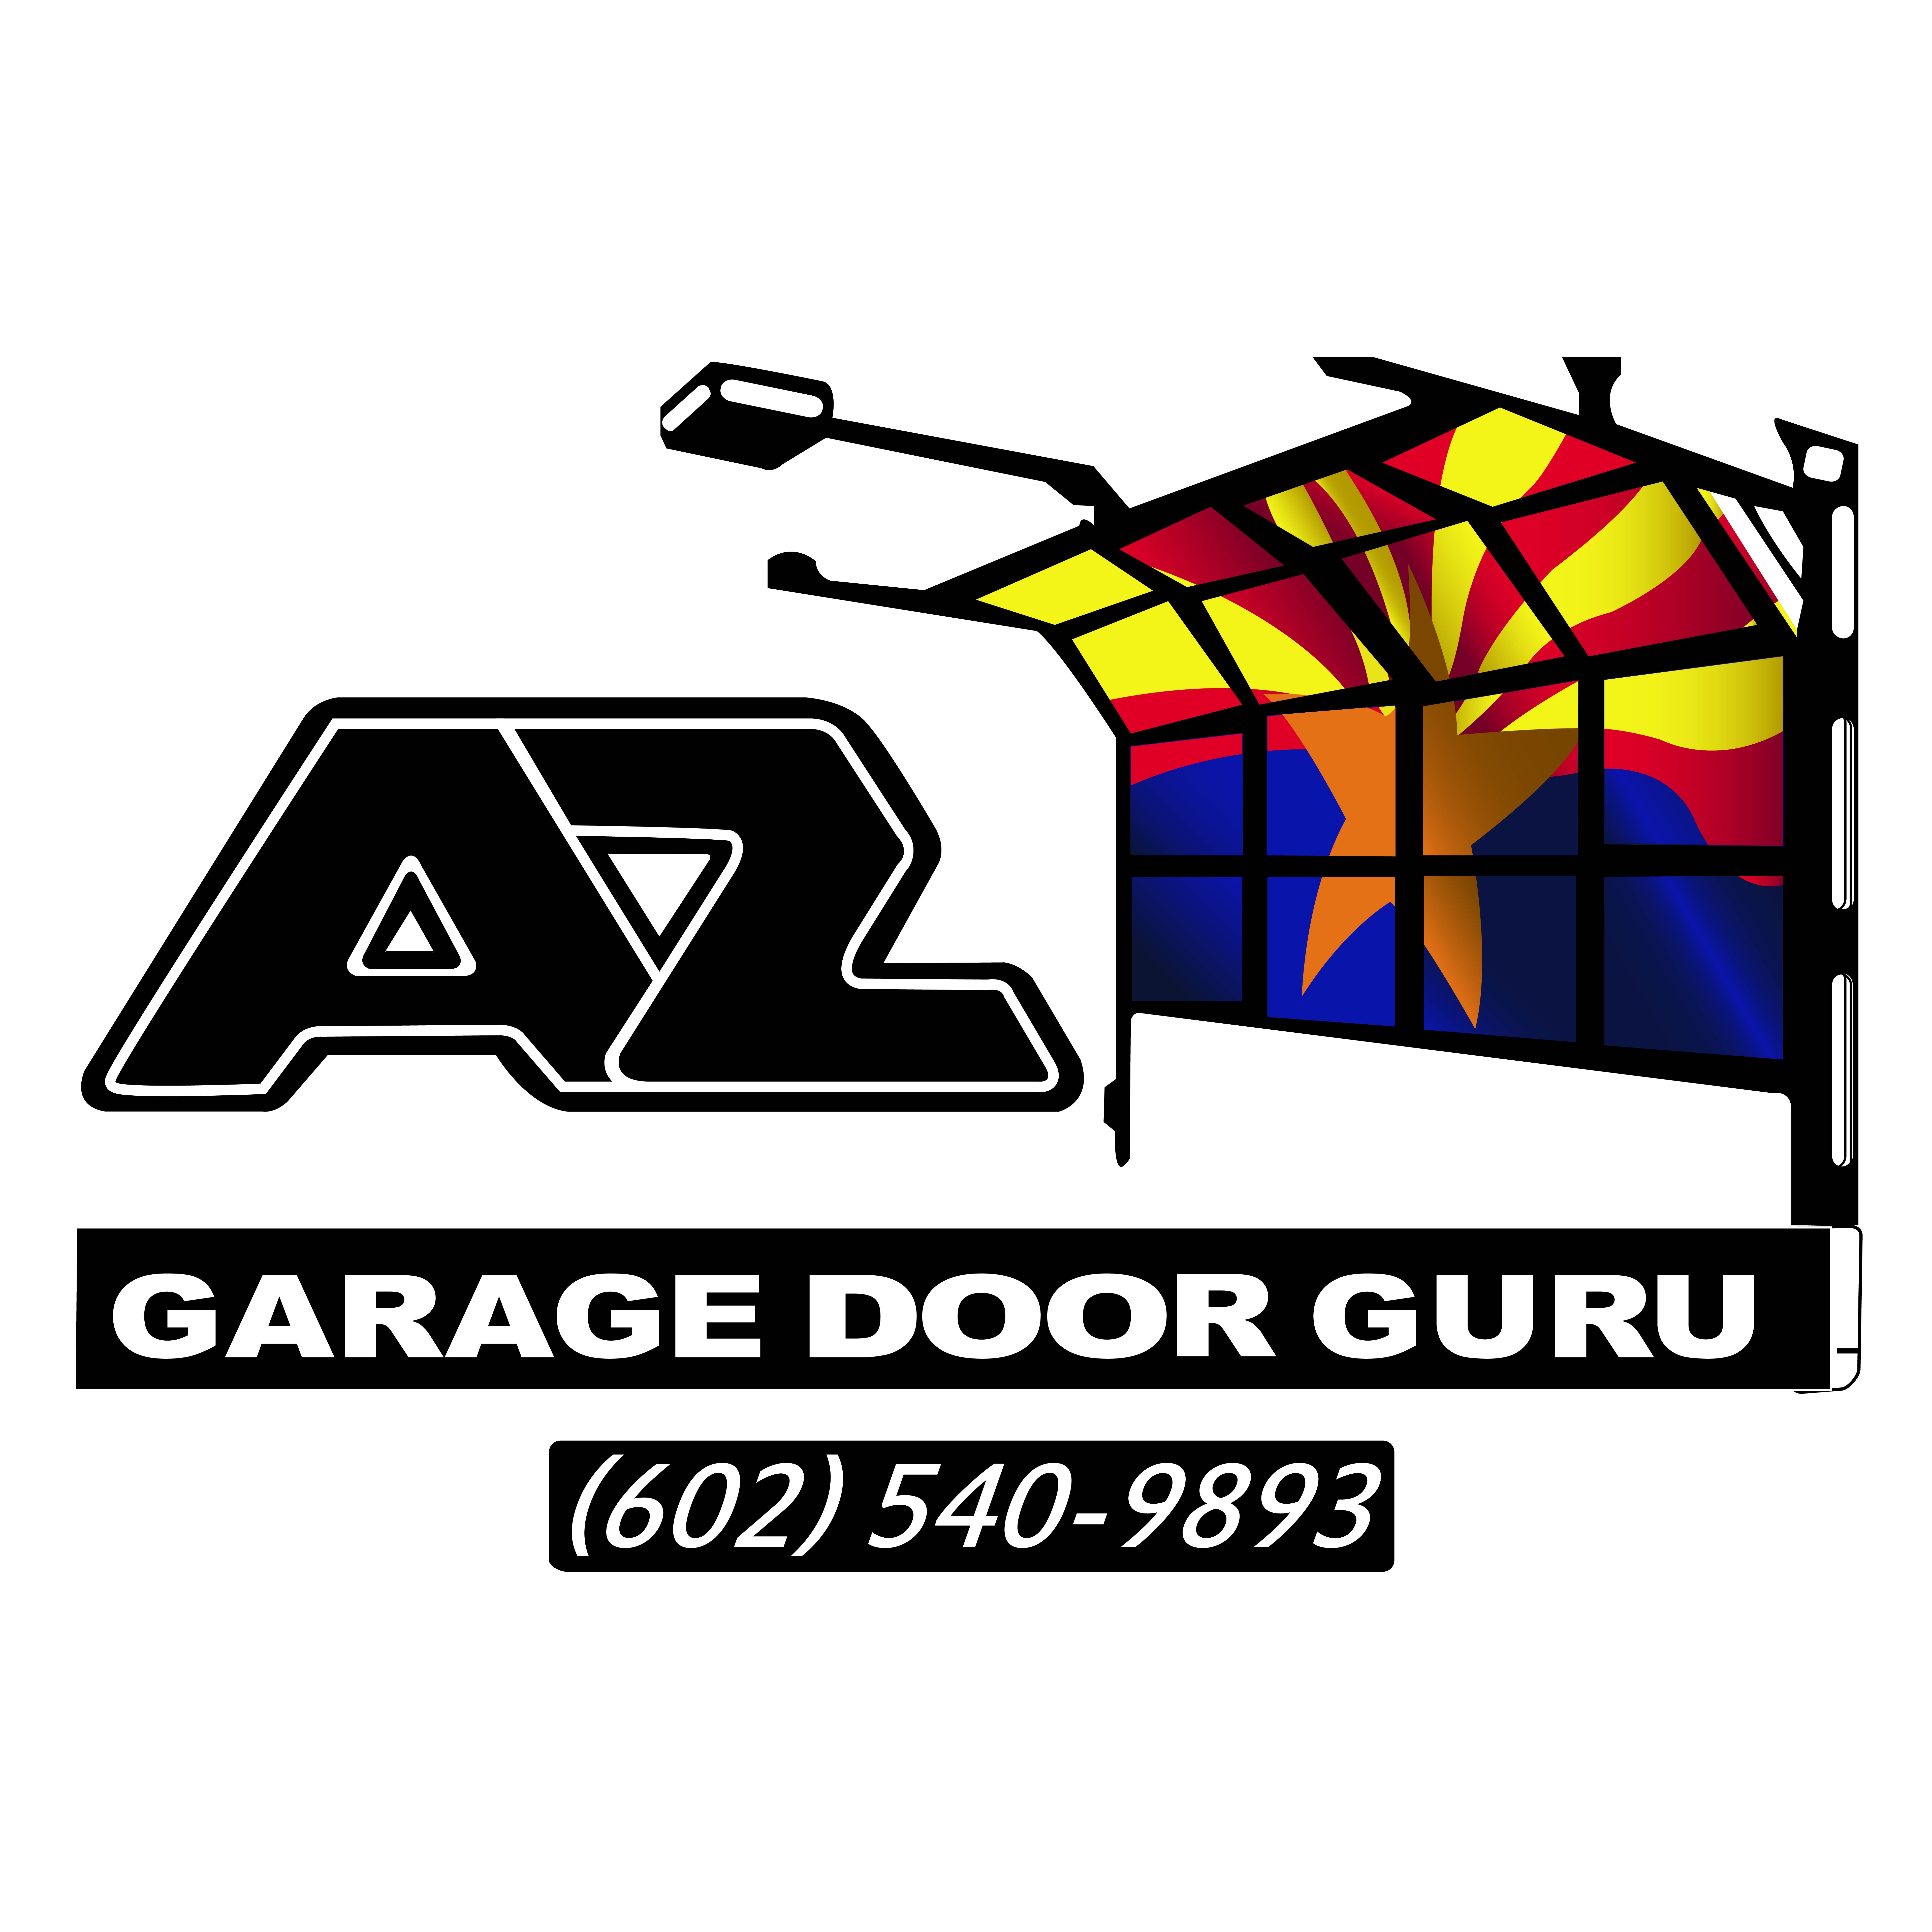 Garage Door Repair Experts in Phoenix - Check out the BIG BAD DOGS in the garage door industry "Arizona Garage Door Guru"